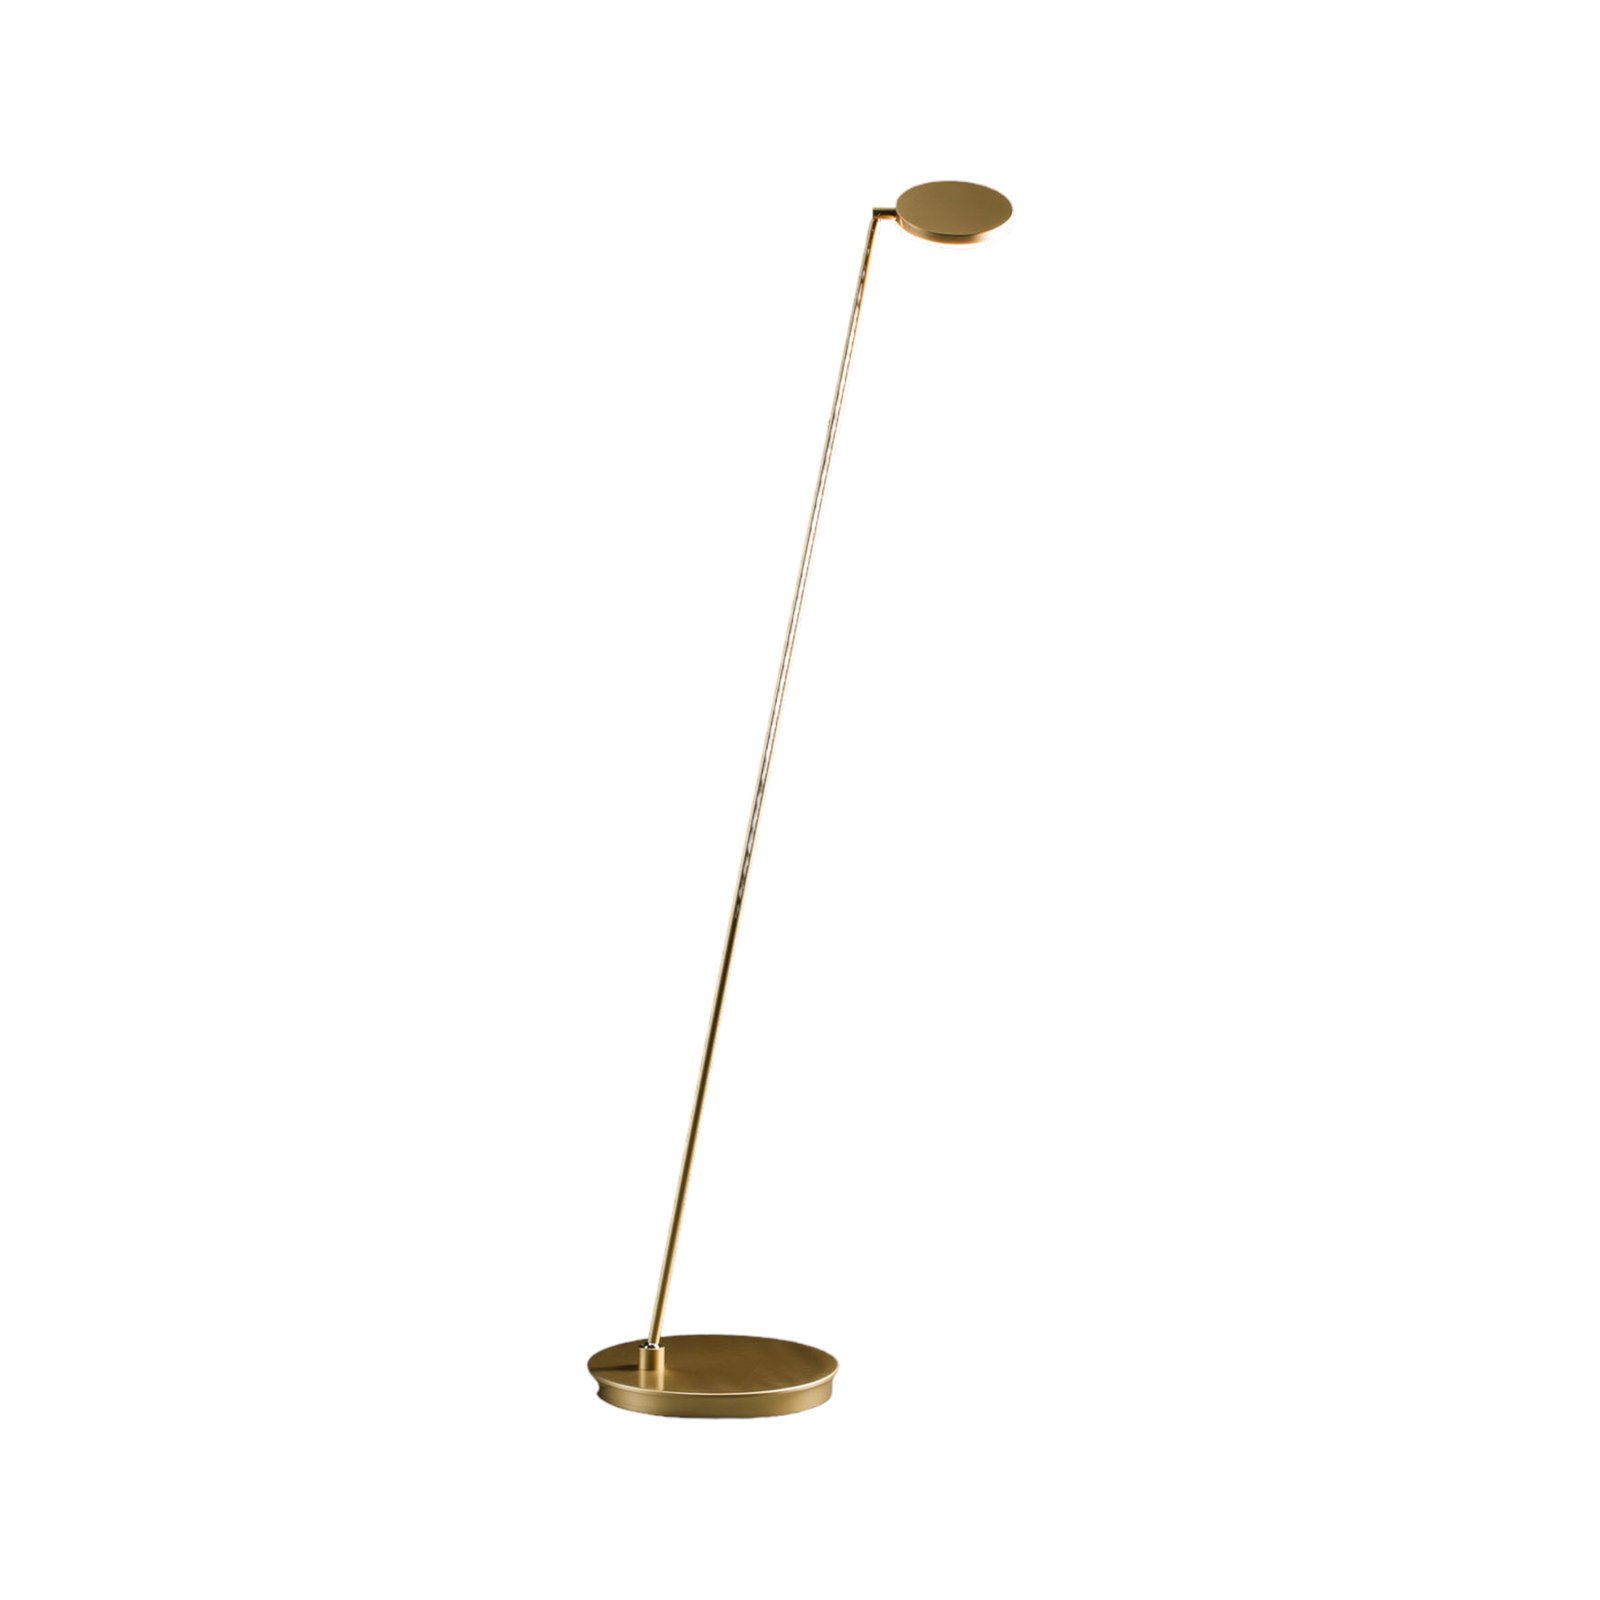 Holtkötter Plano S - LED floor lamp, brass